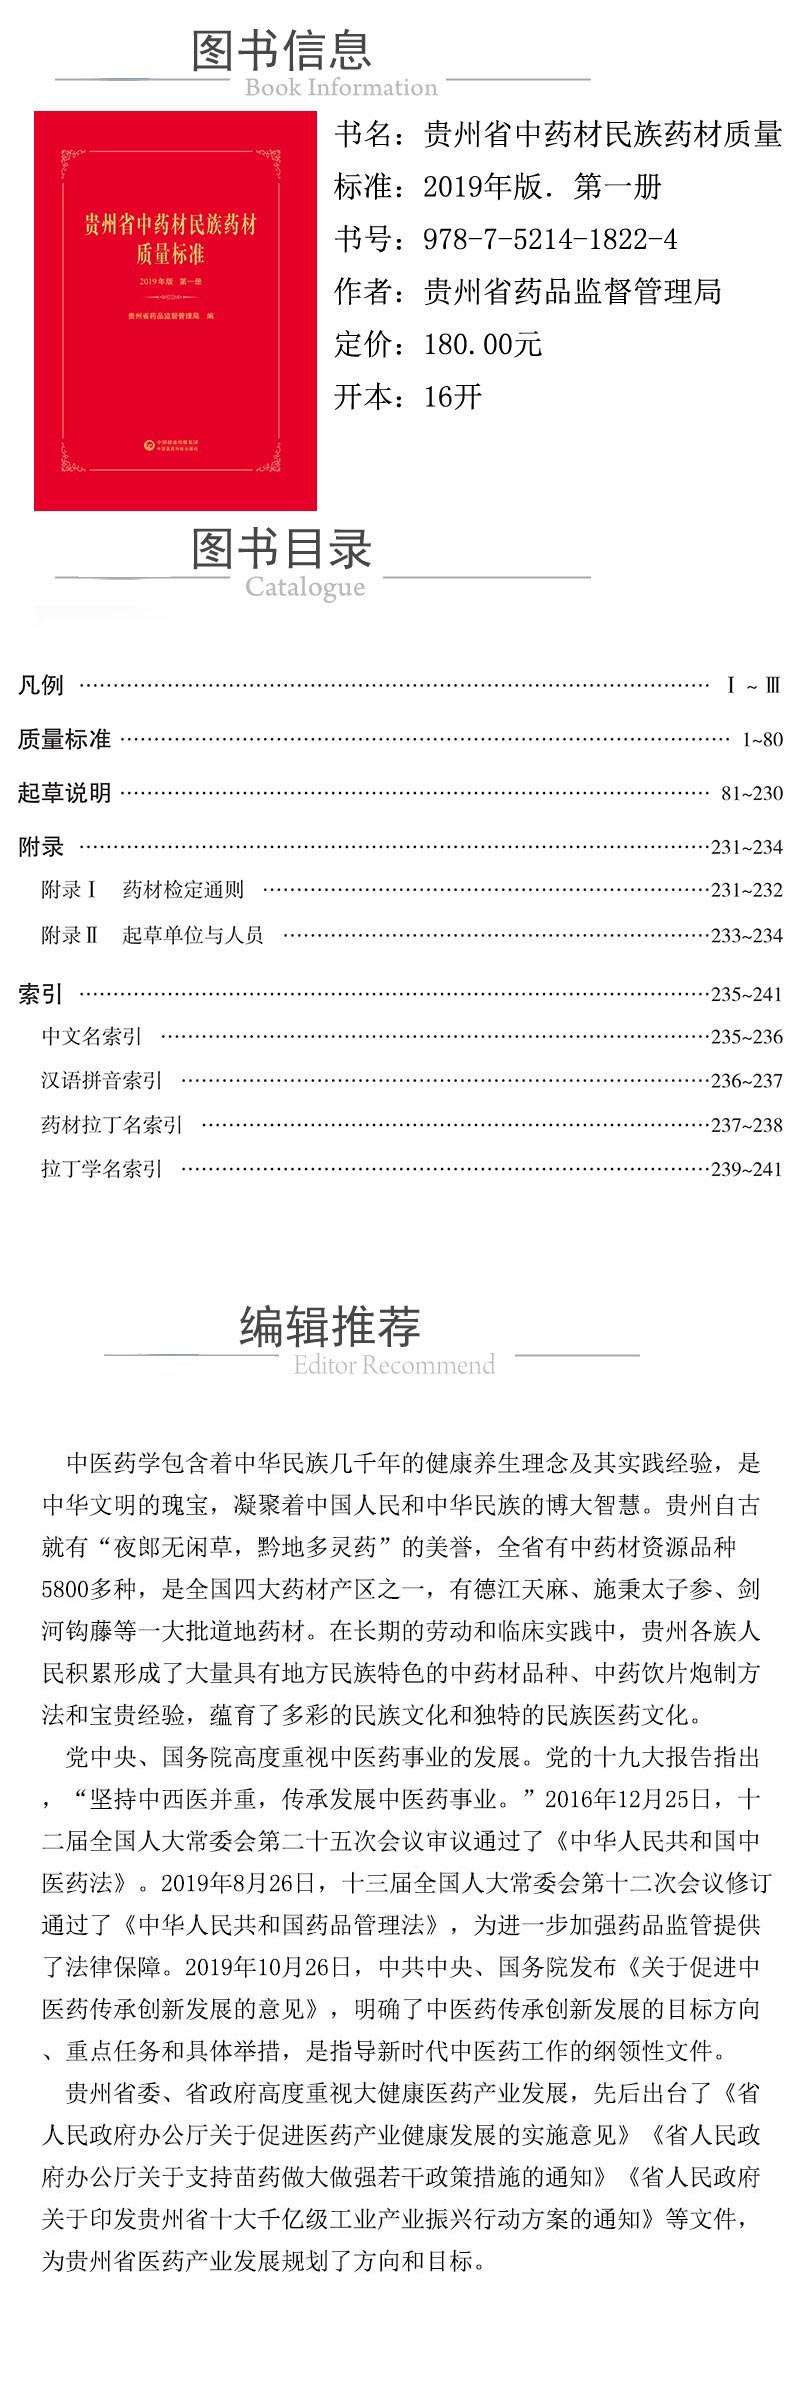 xcy---978-7-5214-1822-4---贵州省中药材民族药材质量标准：2019年版．第一册.jpg